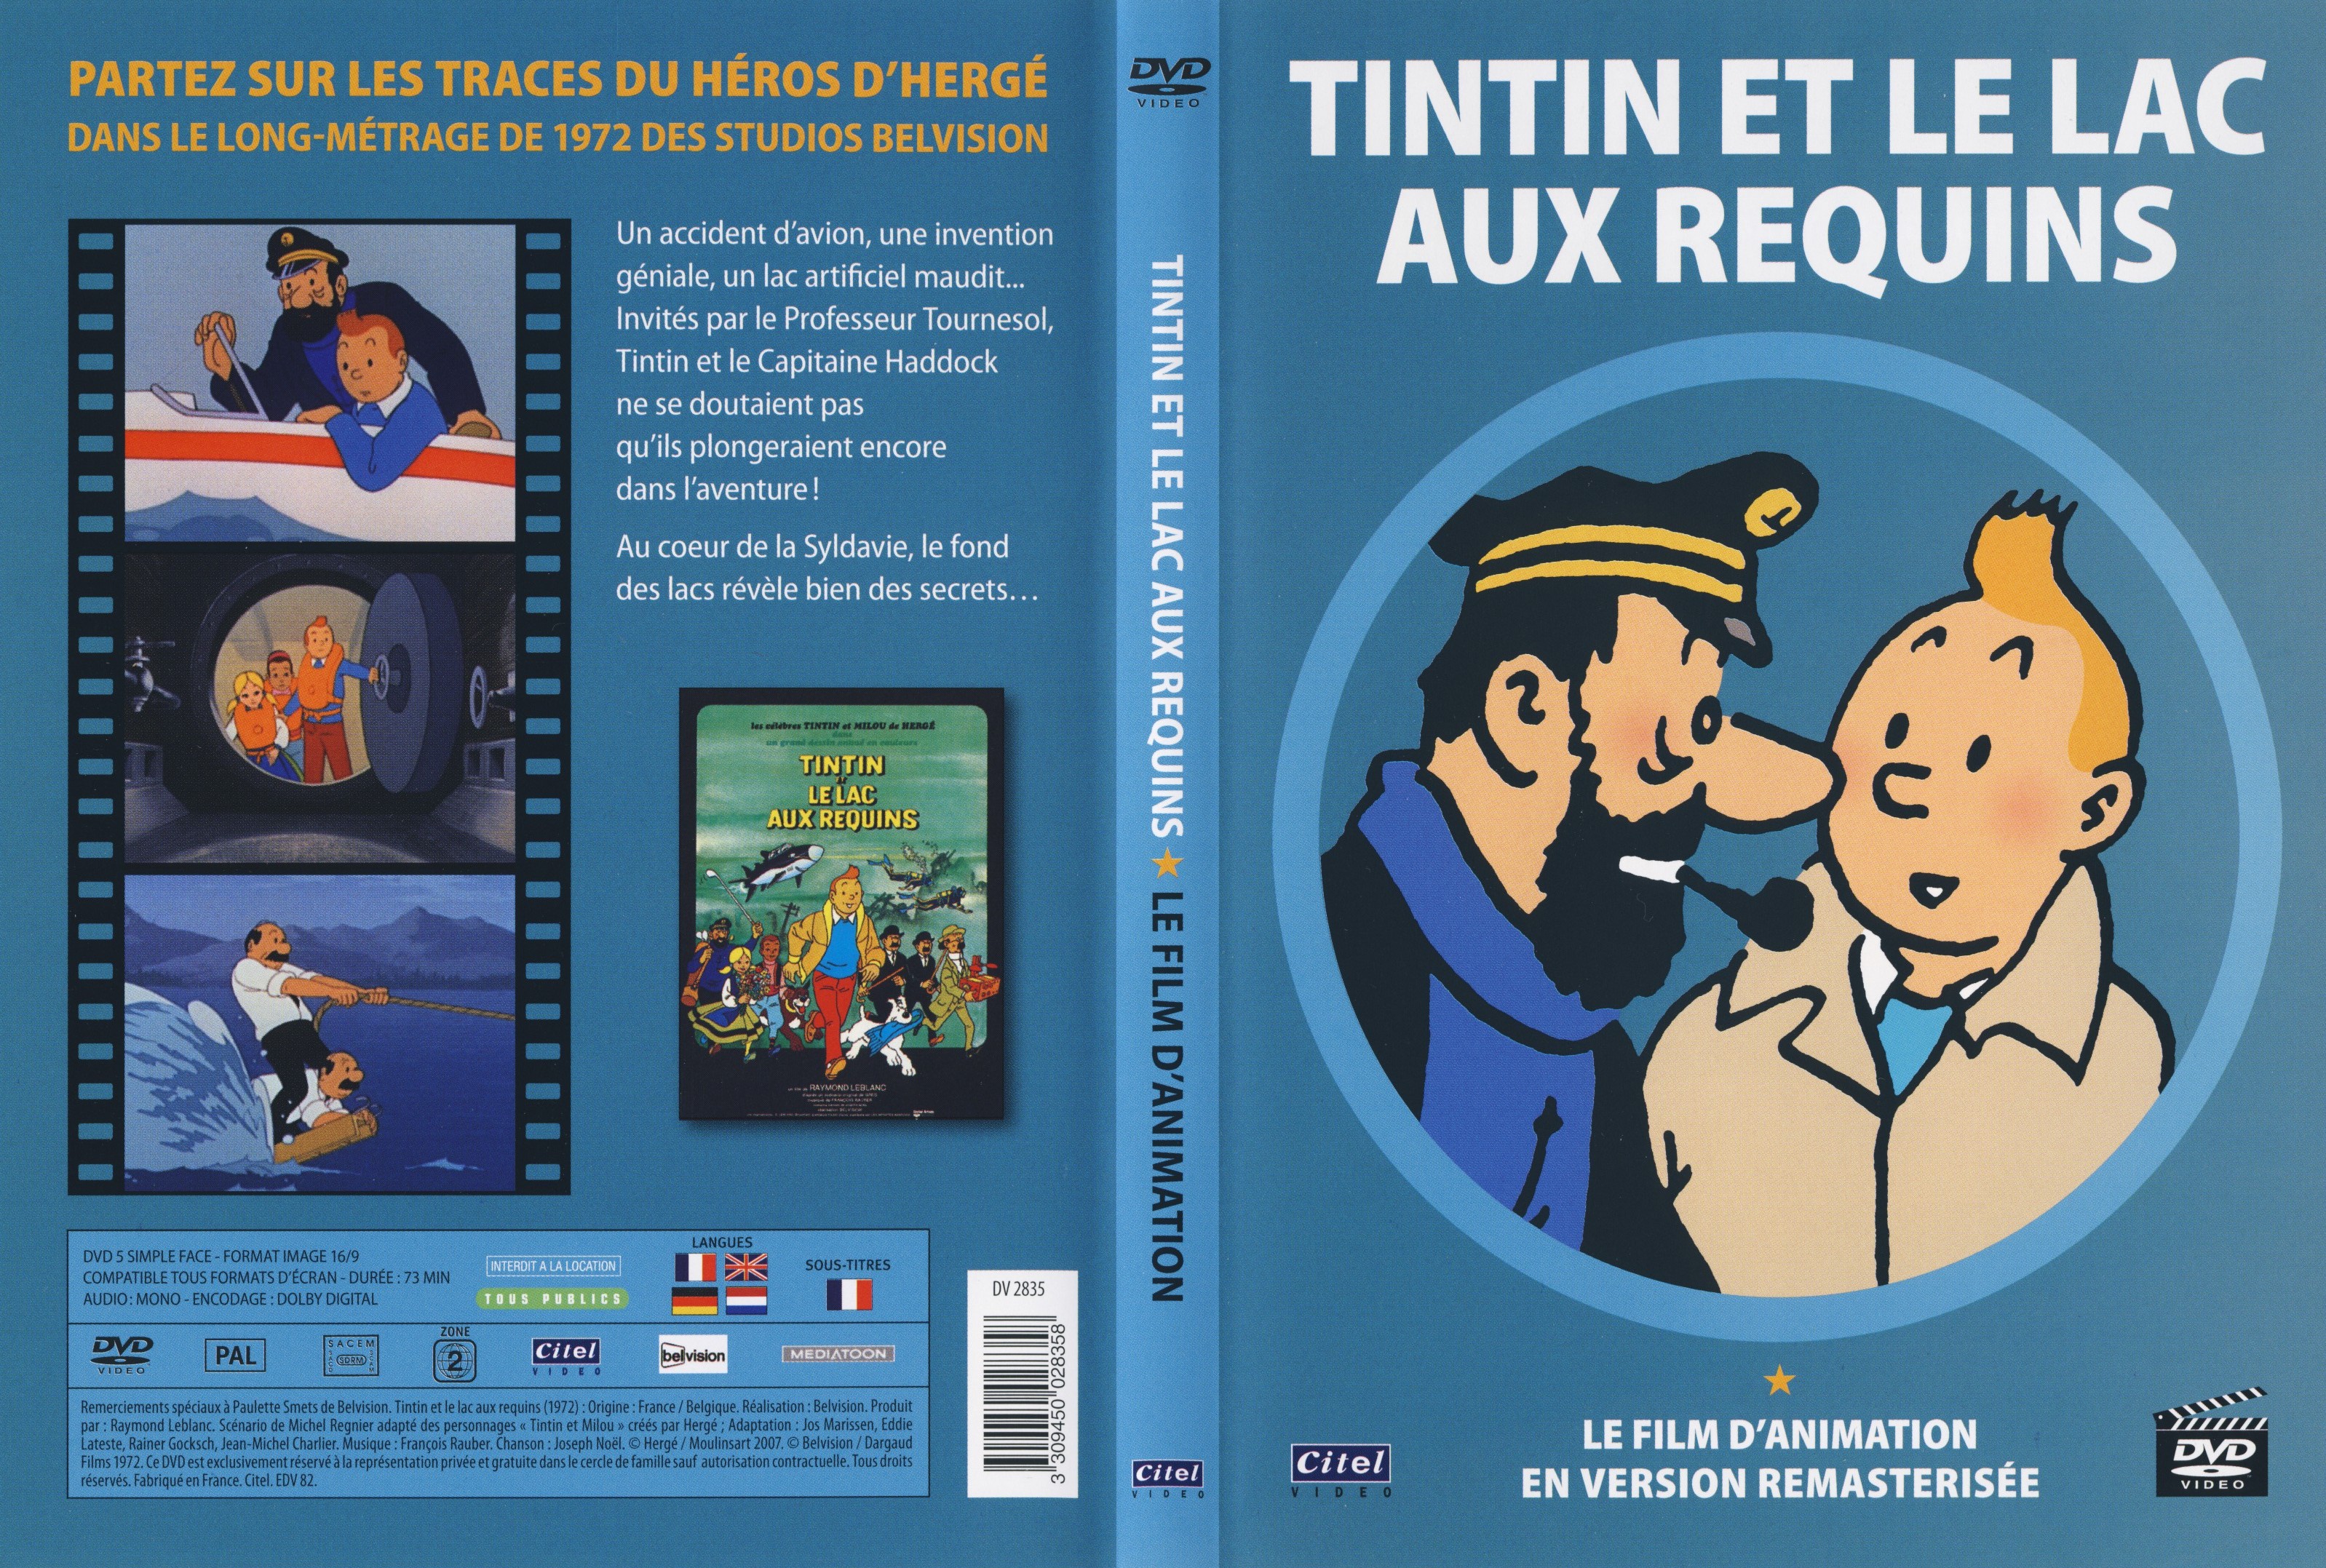 Jaquette DVD Tintin et le lac aux requins v2